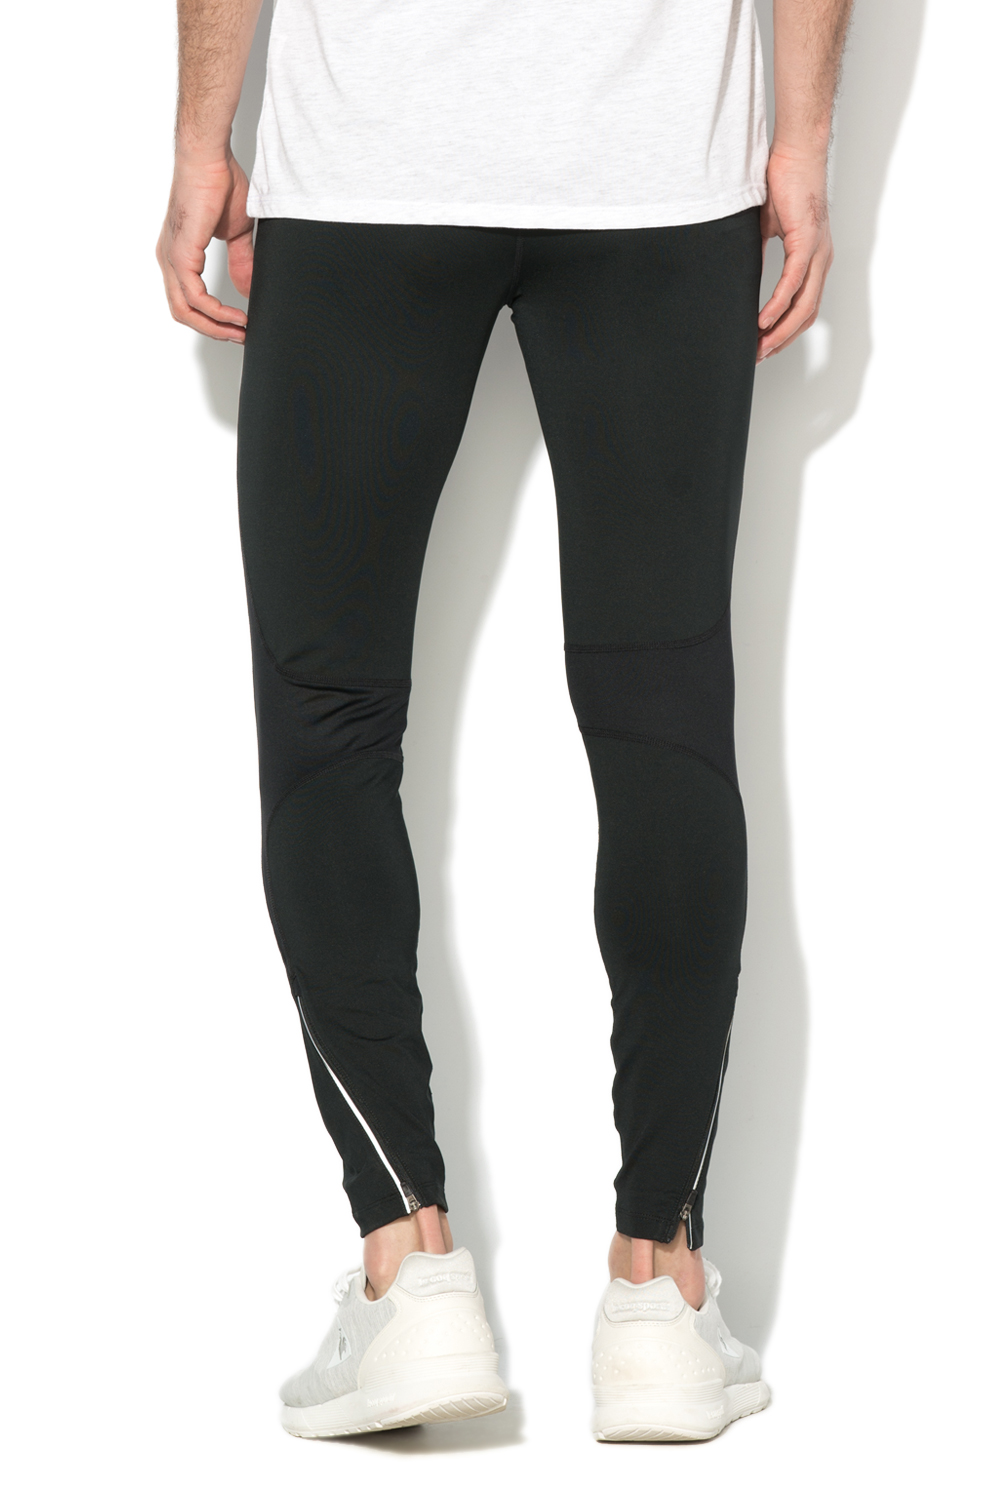 Nike Pantaloni sport cu slituri cu fermoar pentru alergare Barbati